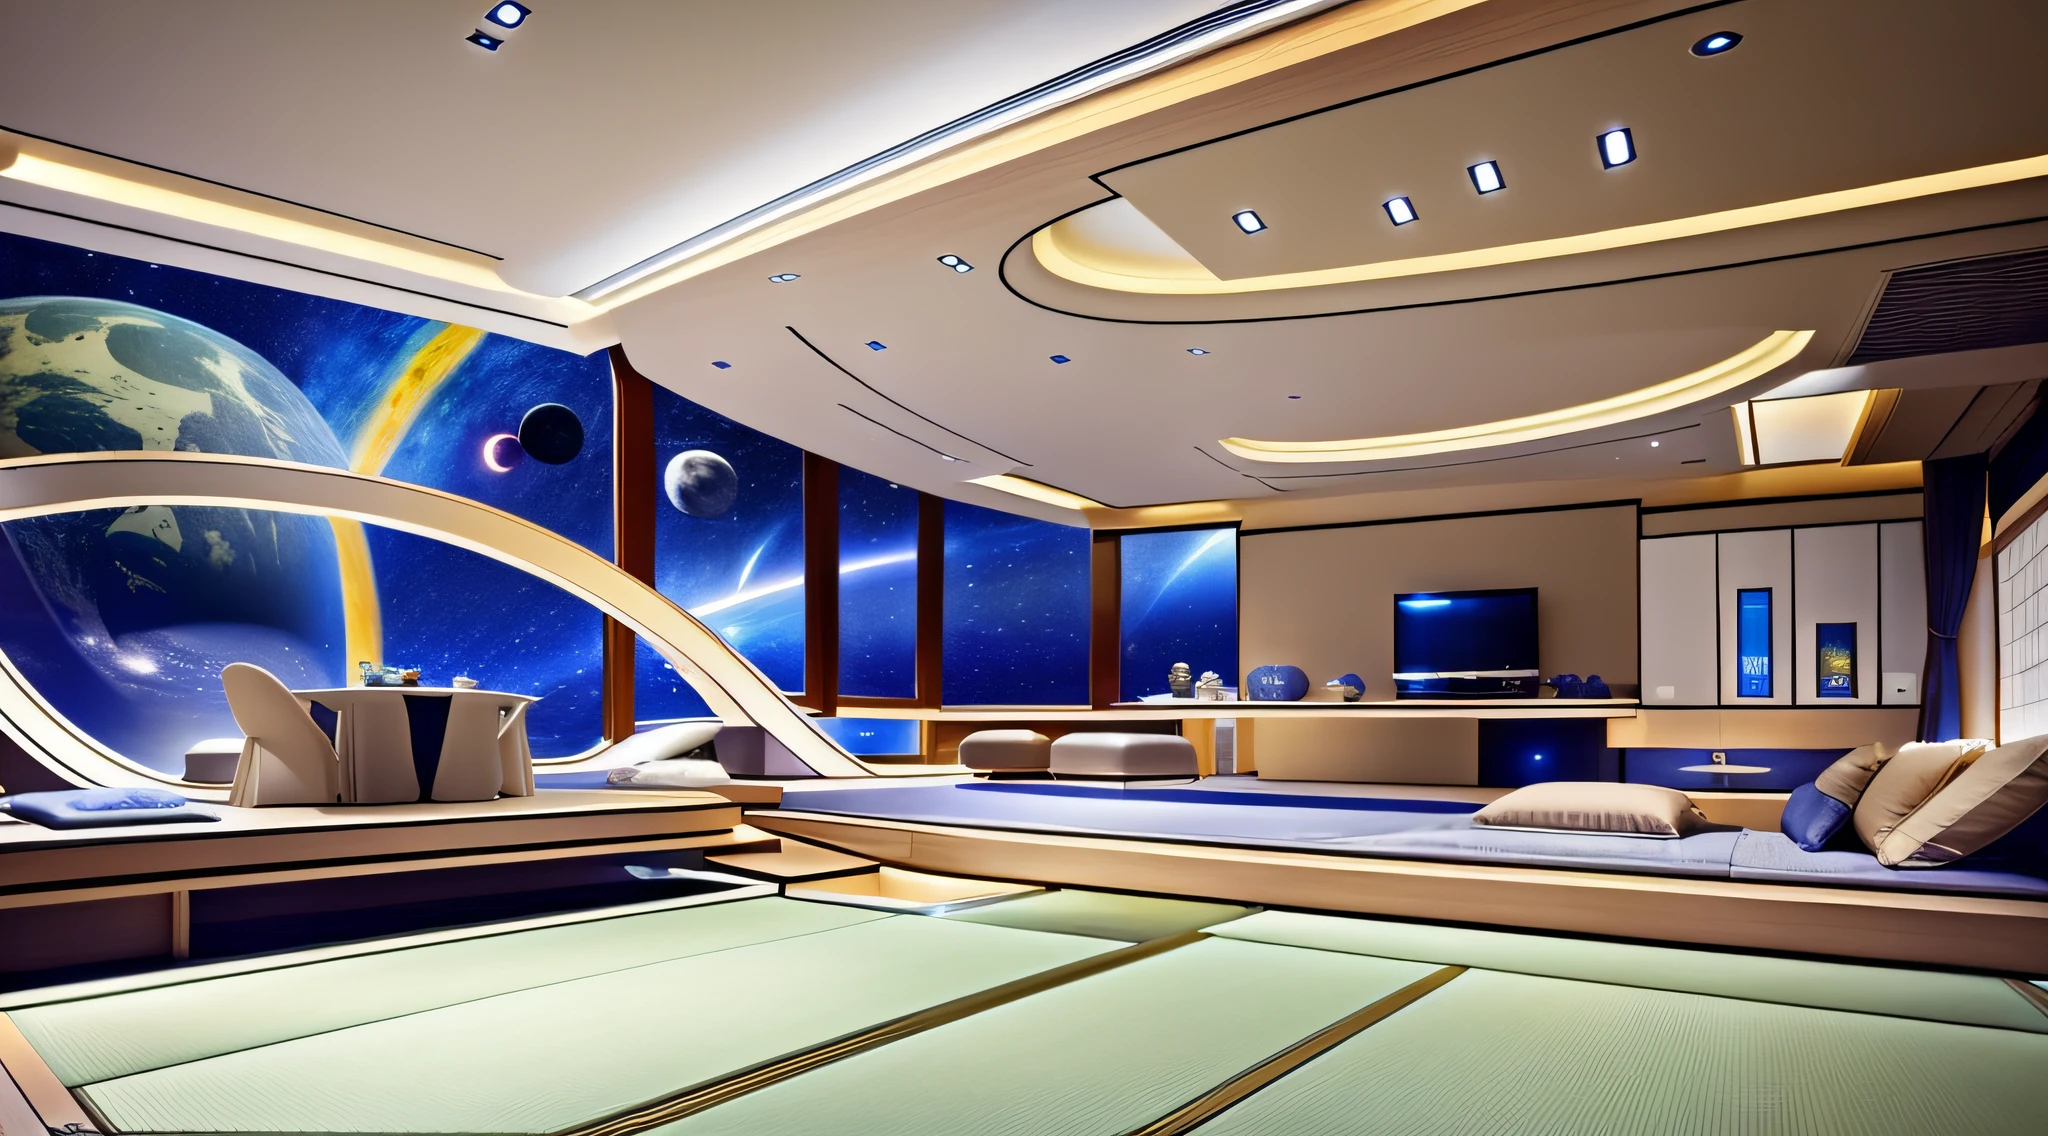 Modernes Wohnzimmerdesign、Der Boden und die Decke sind transparent, so dass Sie den Weltraum sehen können、Es gibt einen Android-Butler im Zimmer、Ein japanischer Stil、jpn、kosmischer Raum、Meisterwerk、realistisch、８k